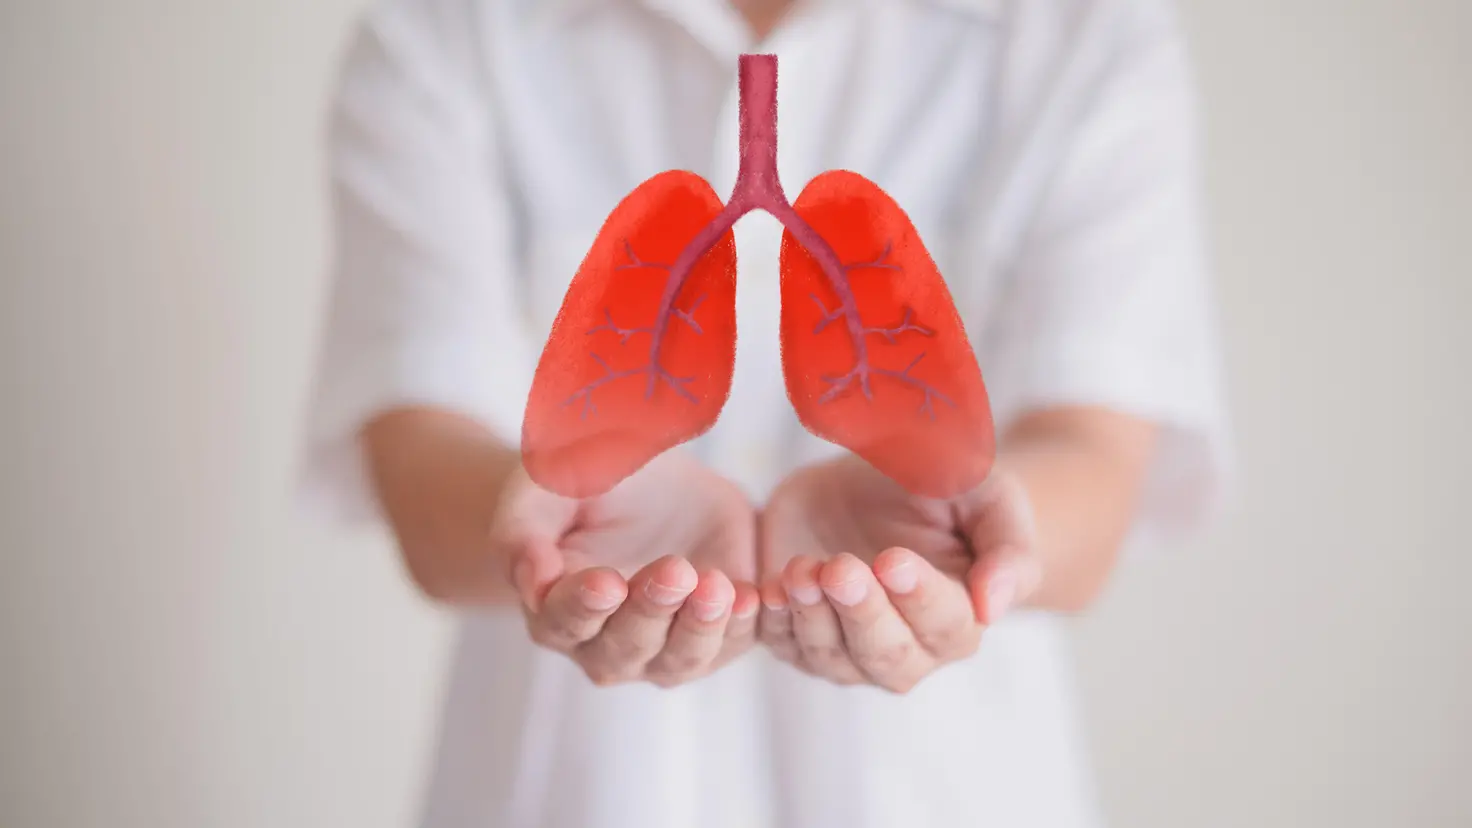 Zu sehen ist ein Bild zur Organspende, auf dem ein Mann ein Symbolbild einer Lunge vor sich hält